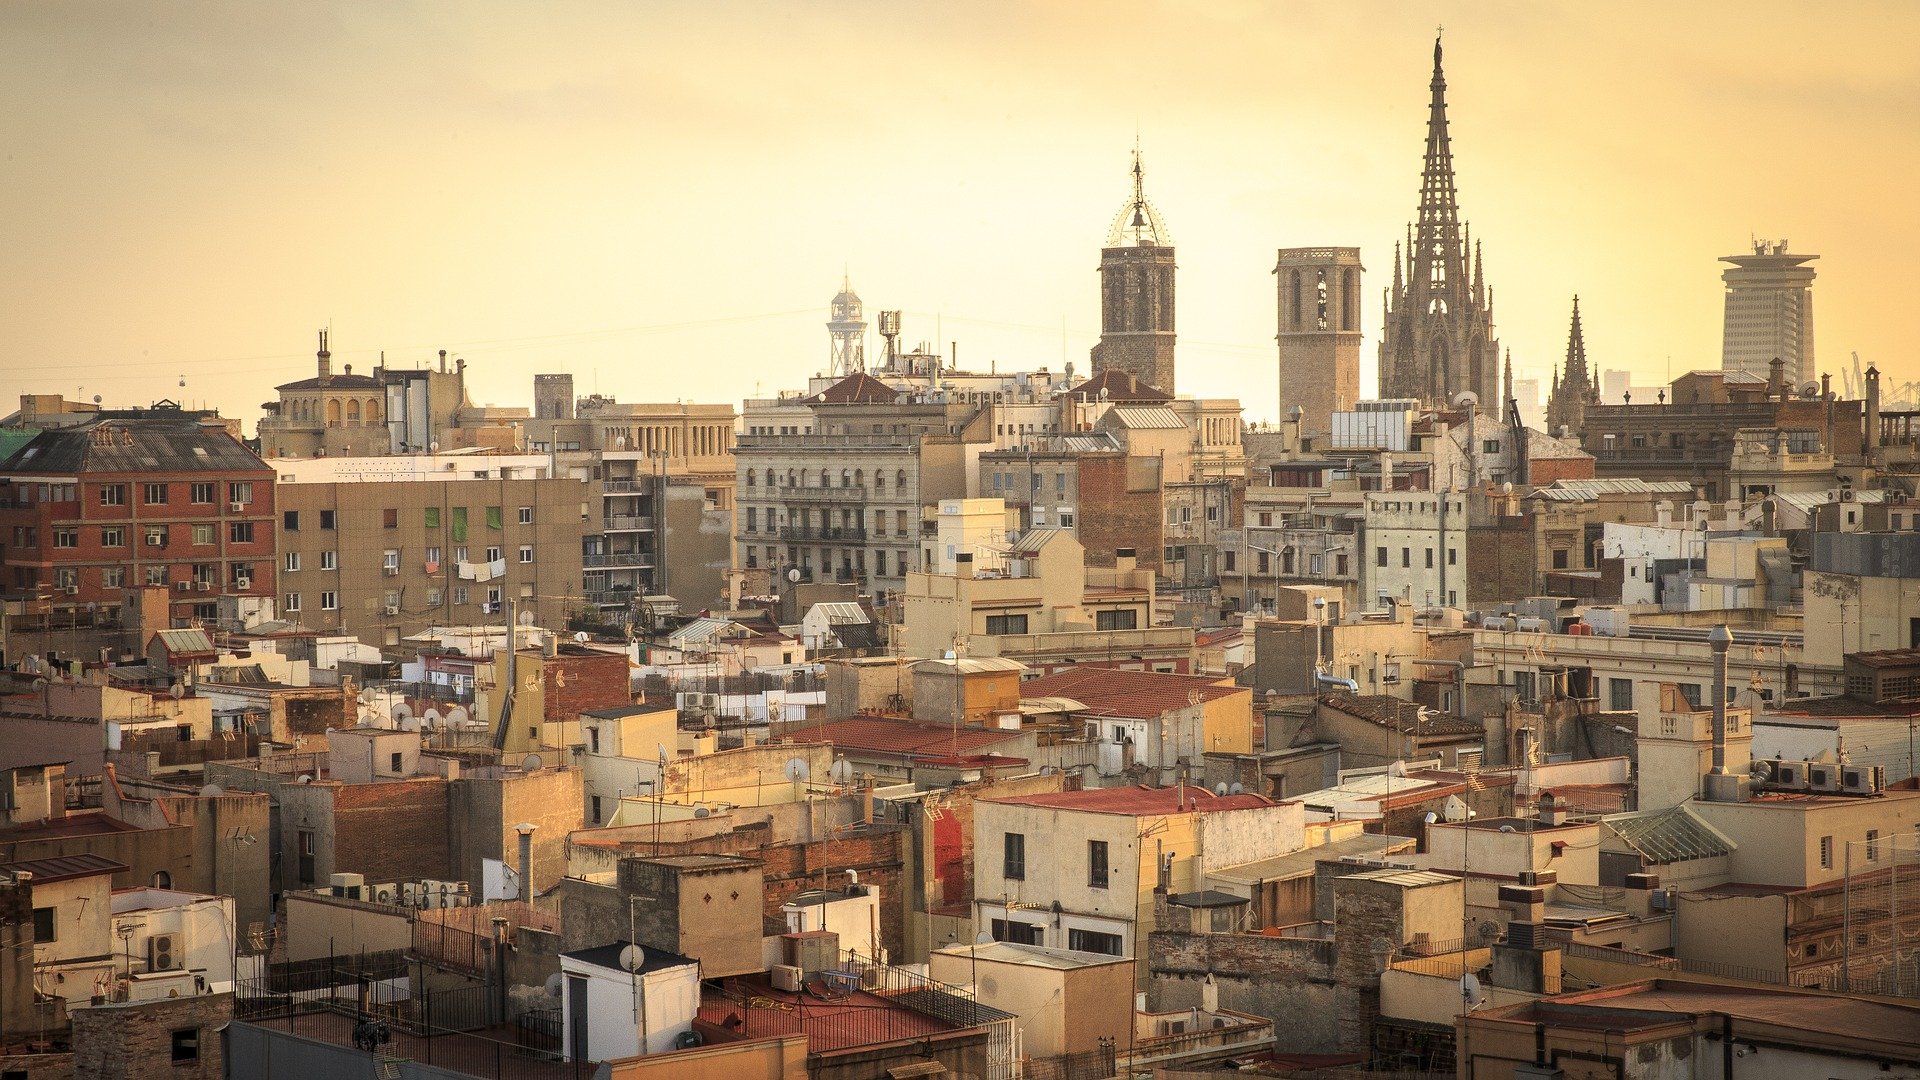 Es dispara el preu de l'habitatge a Barcelona: creix un 21,7%